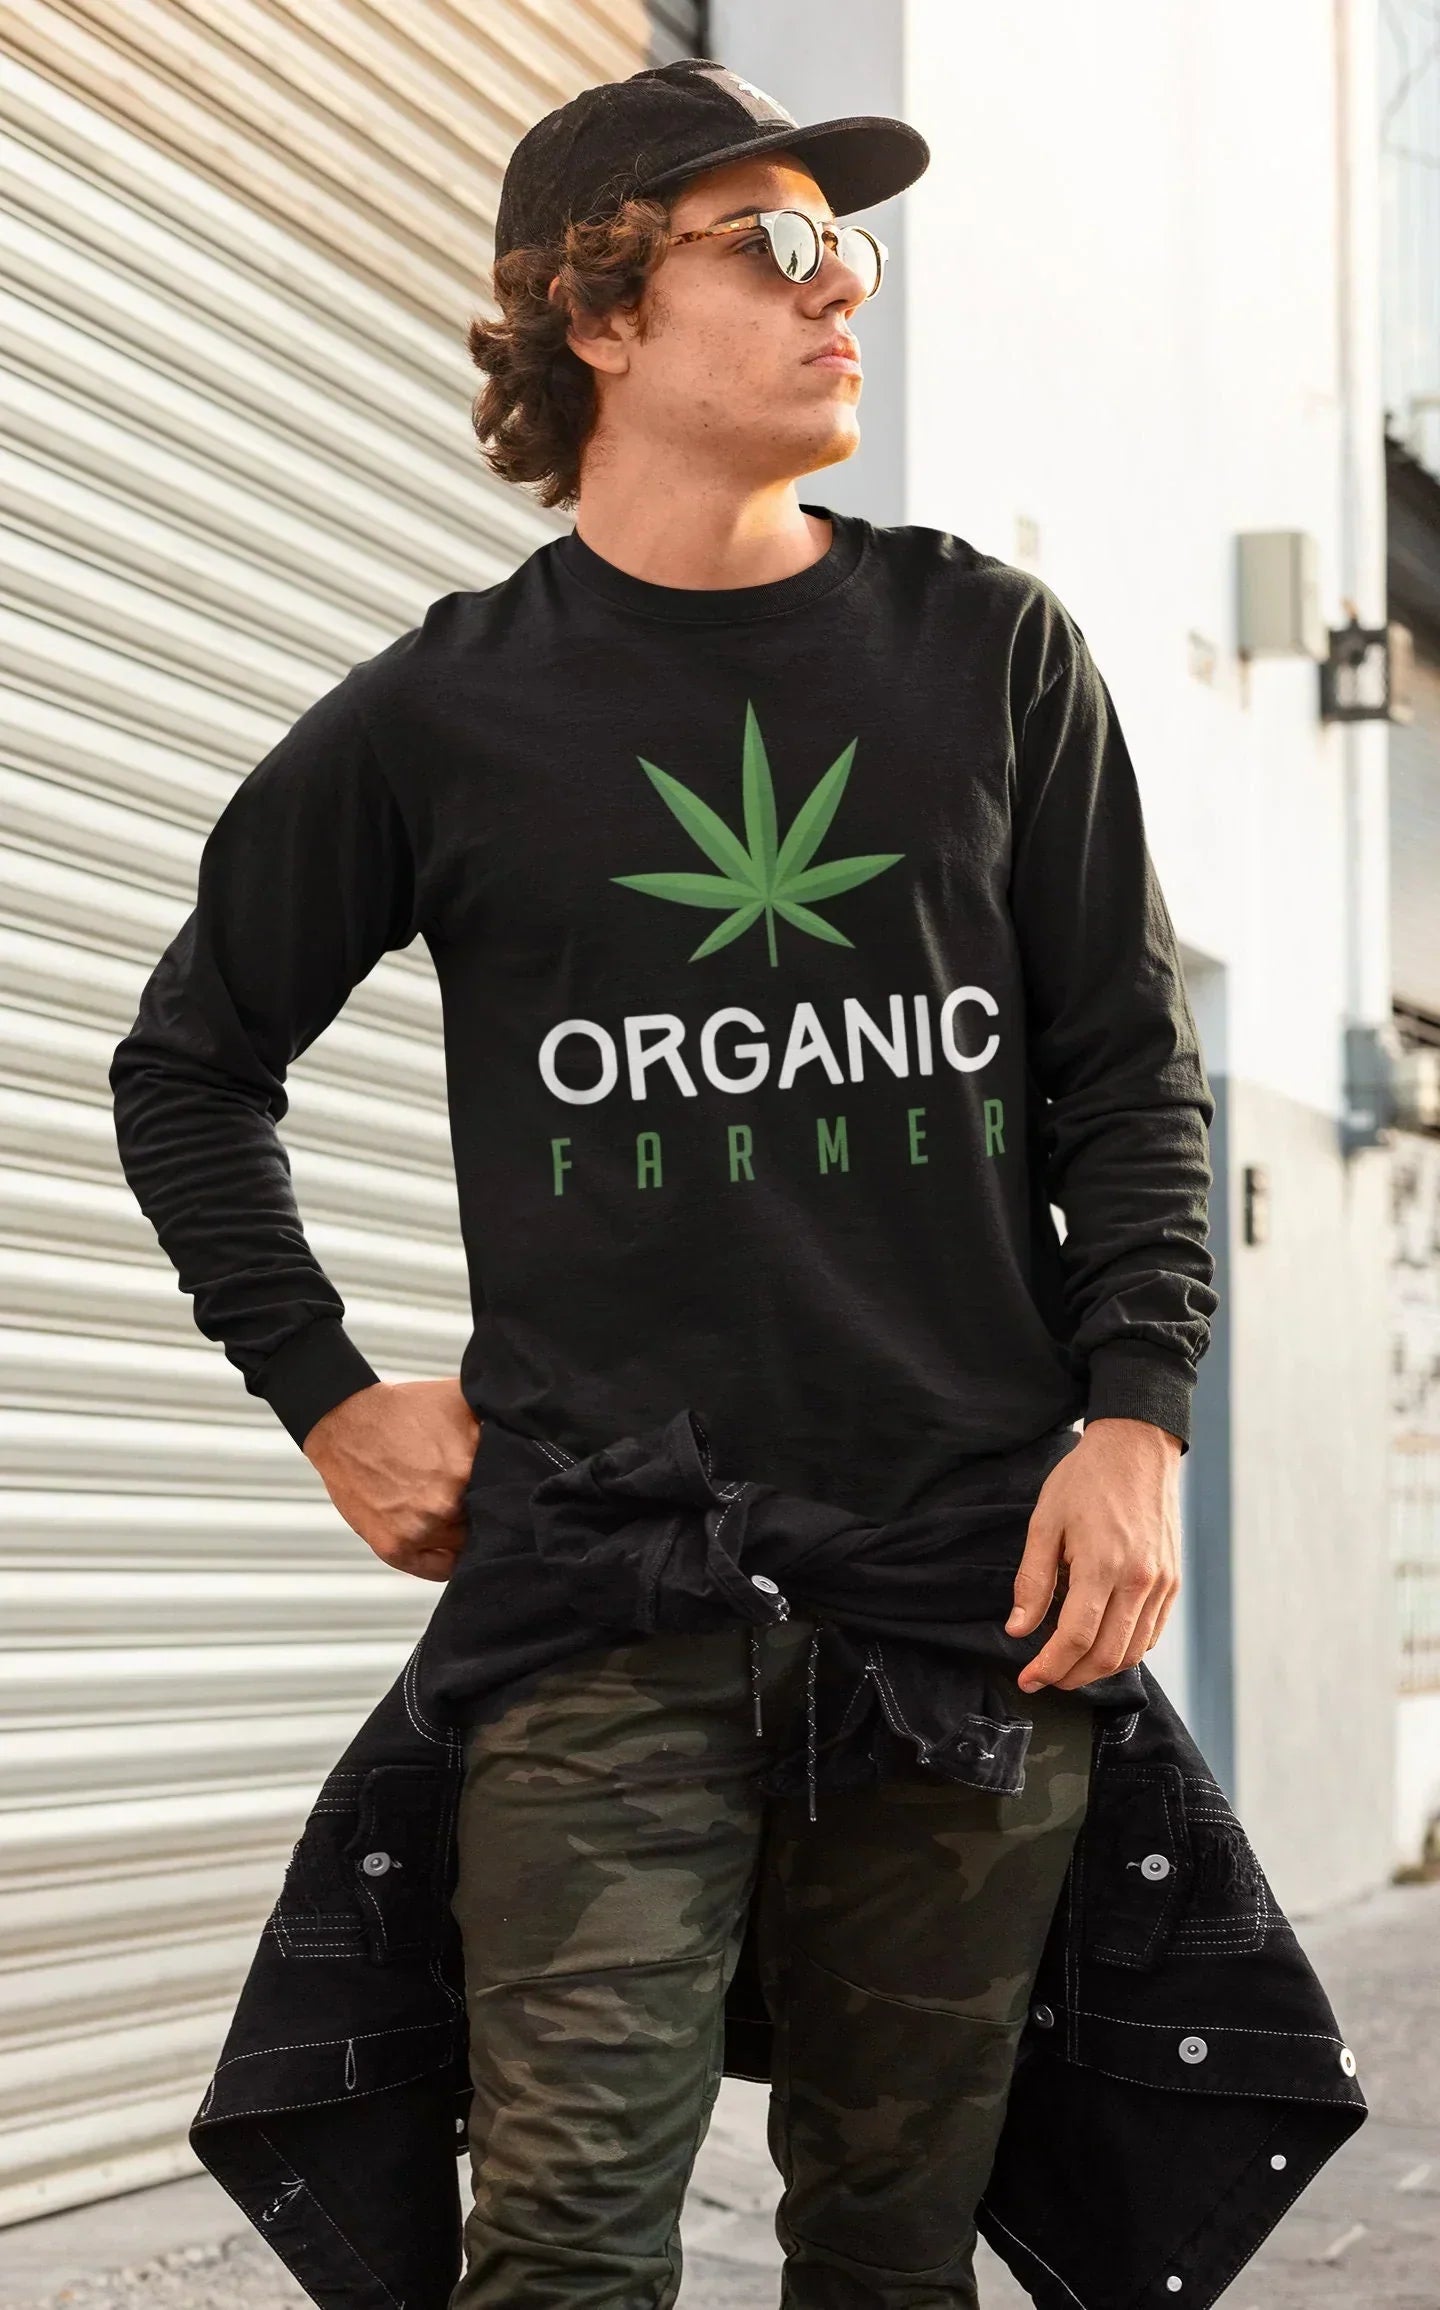 Organic Vegan Stoner Gift